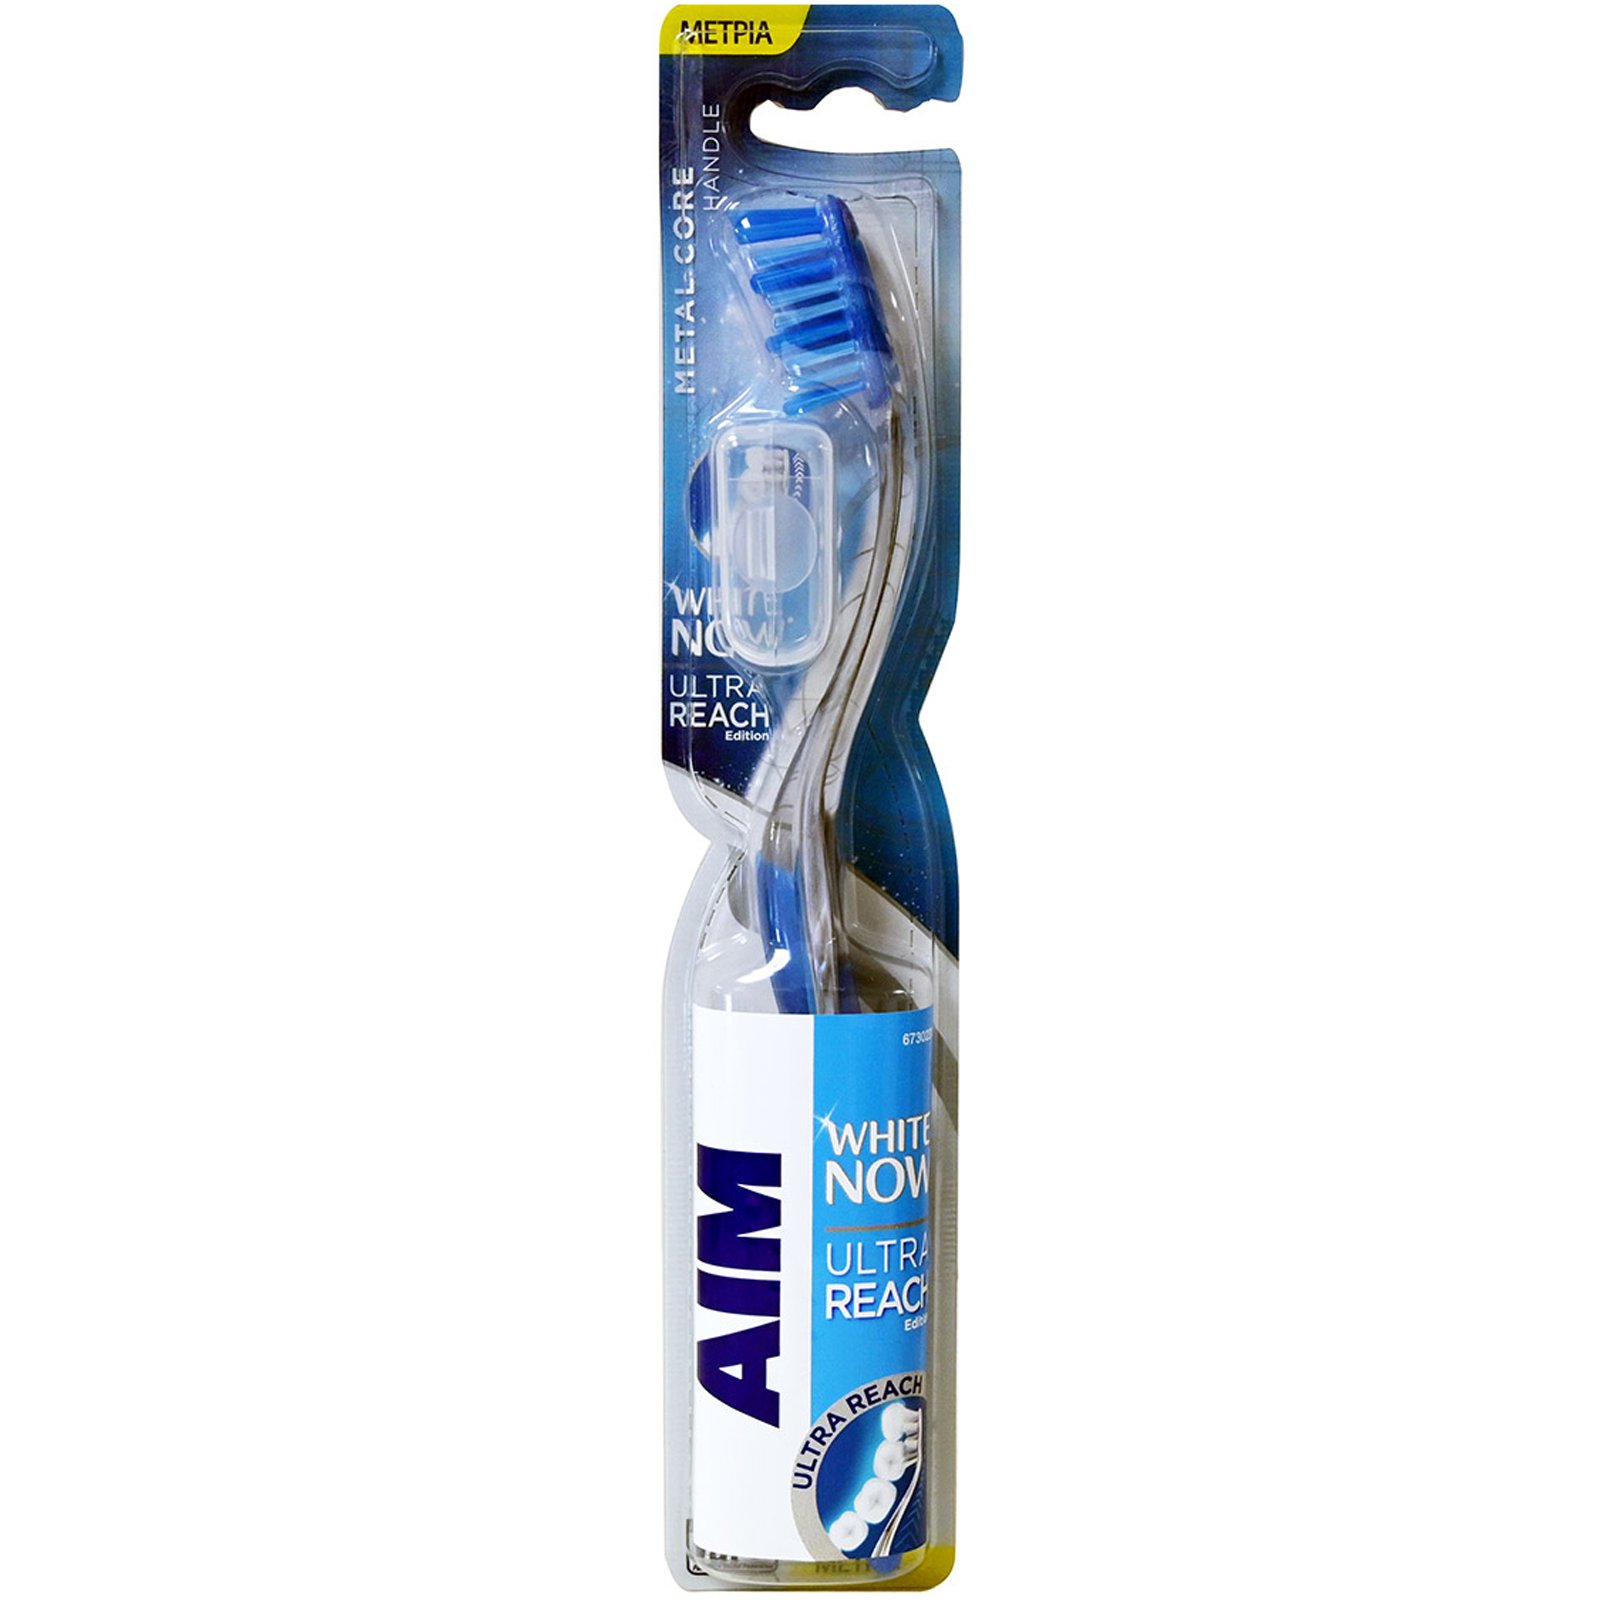 Aim White Now Ultra Reach Edition Μέτρια Χειροκίνητη Οδοντόβουρτσα που Προσφέρει Βαθύ Καθαρισμό στα πιο Δυσπρόσιτα Σημεία 1 Τεμάχιο